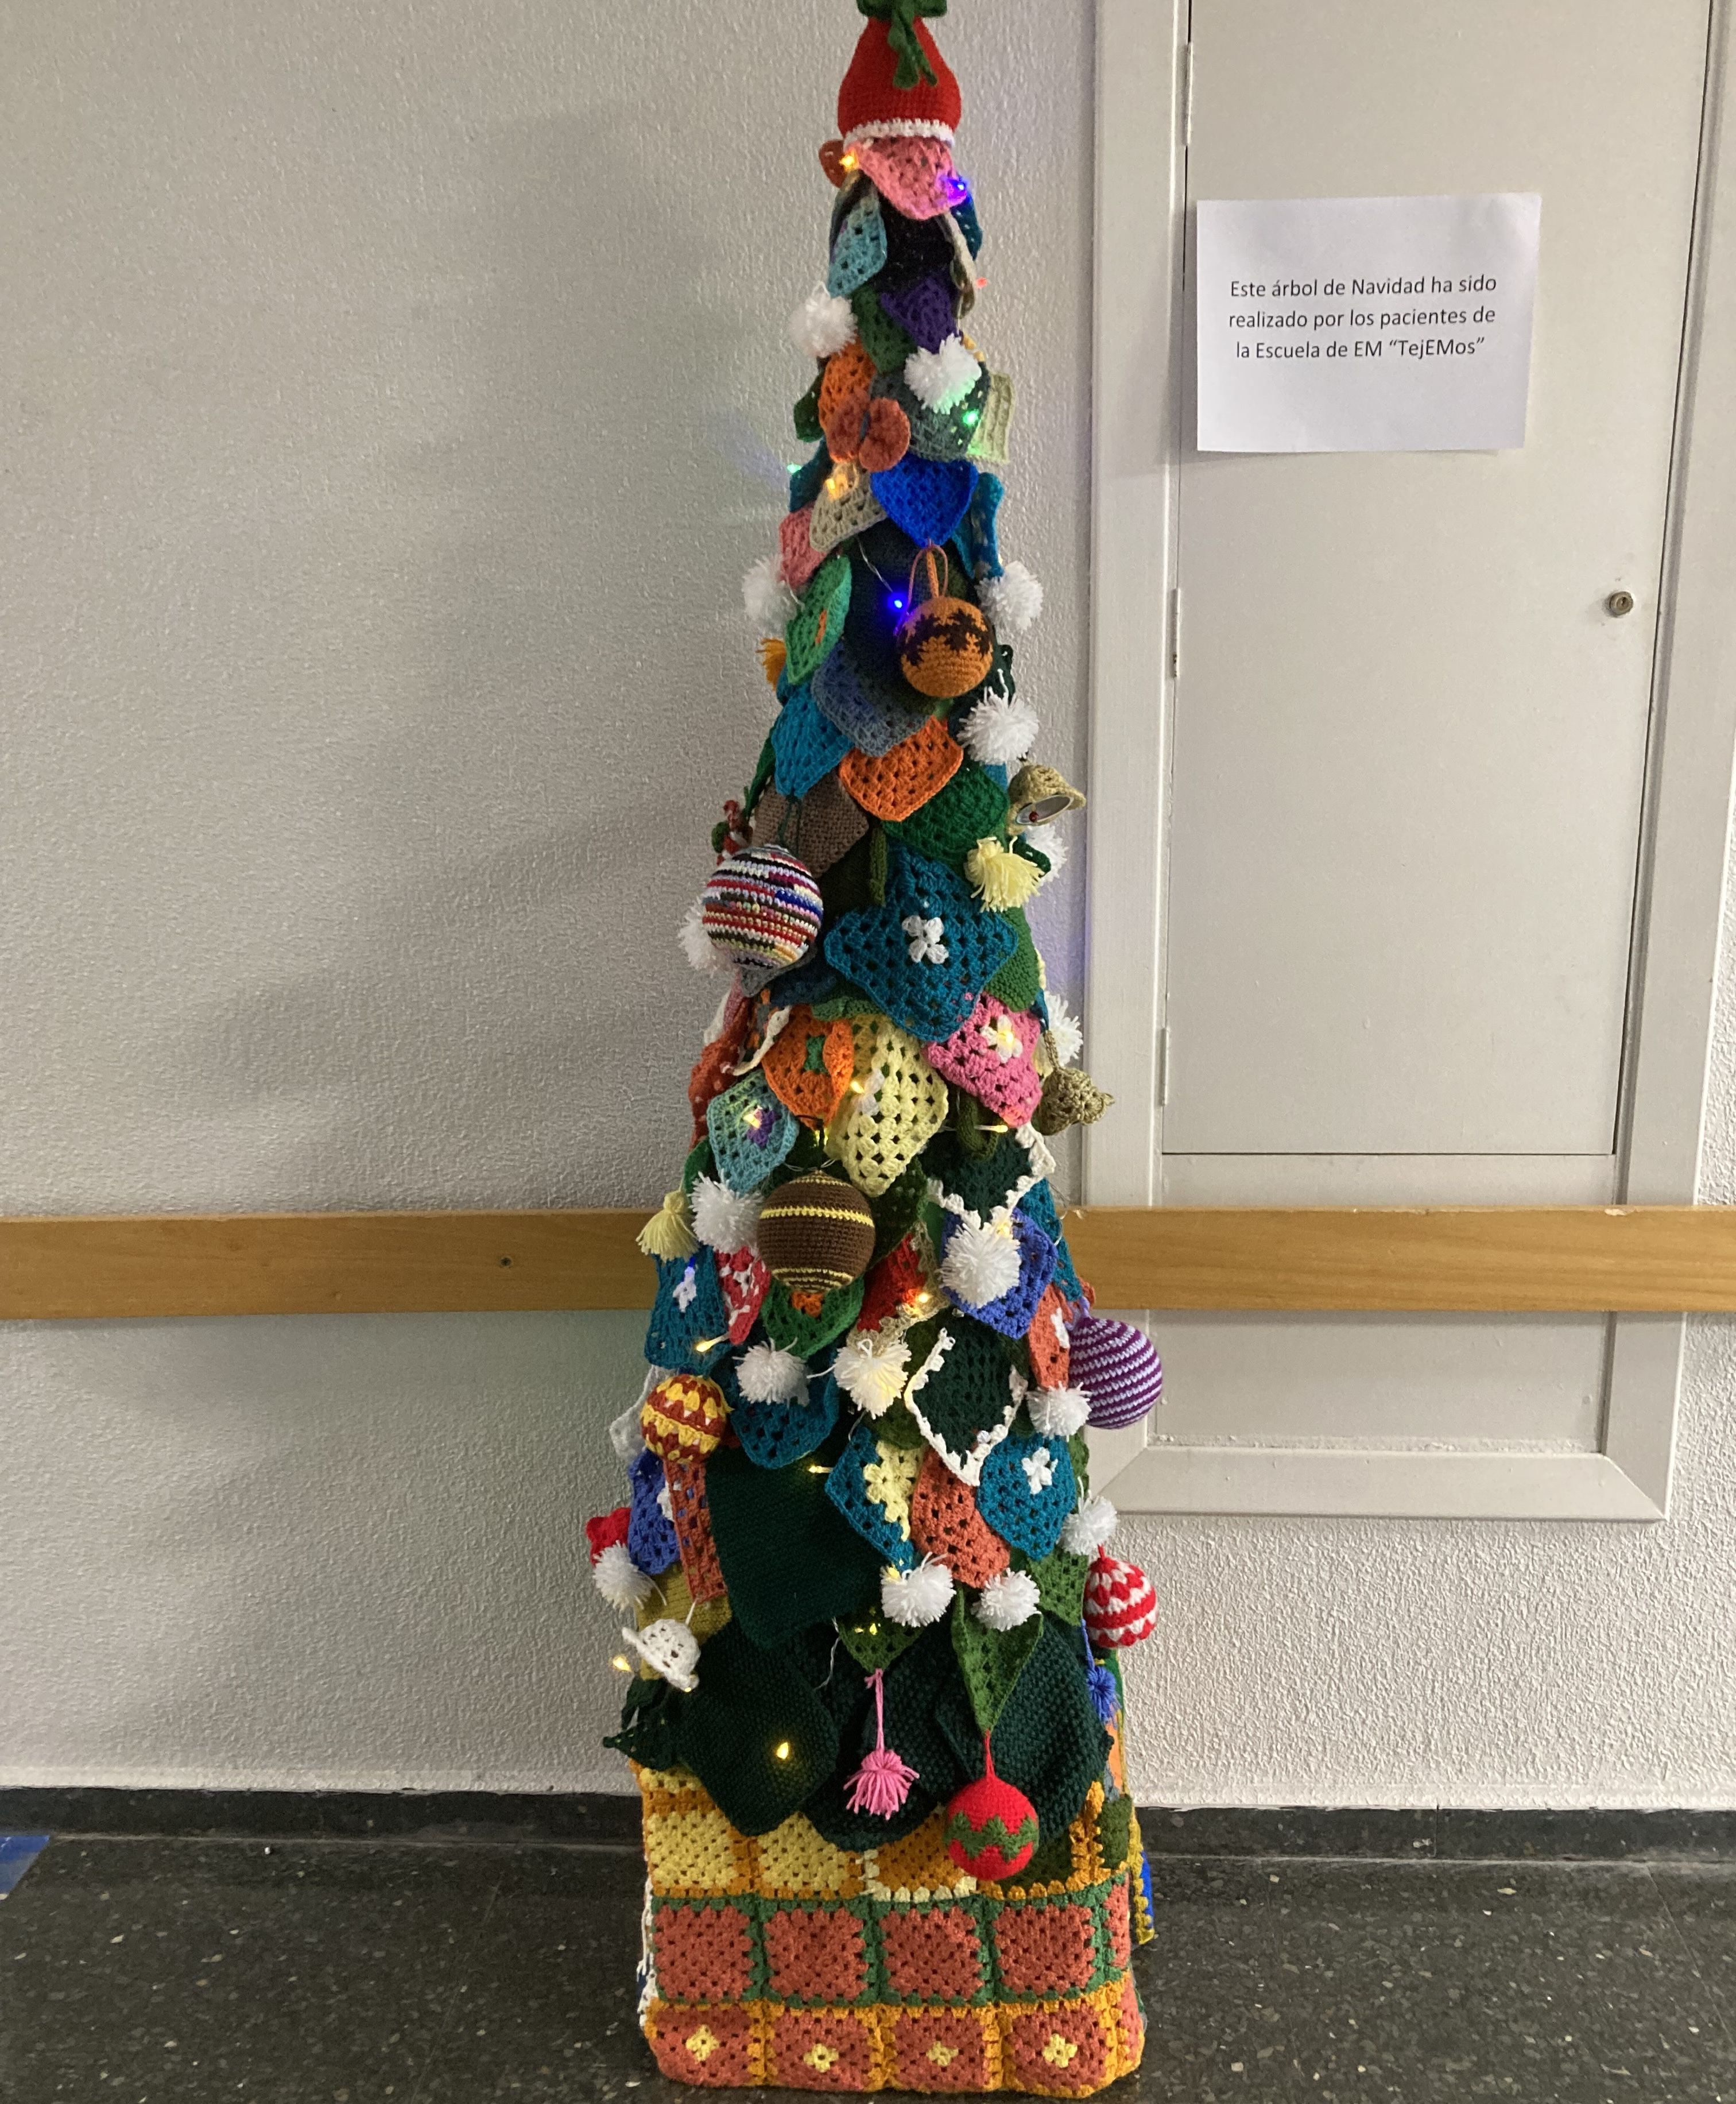 Árbol de Navidad realizado por los pacientes de la Escuela de EM